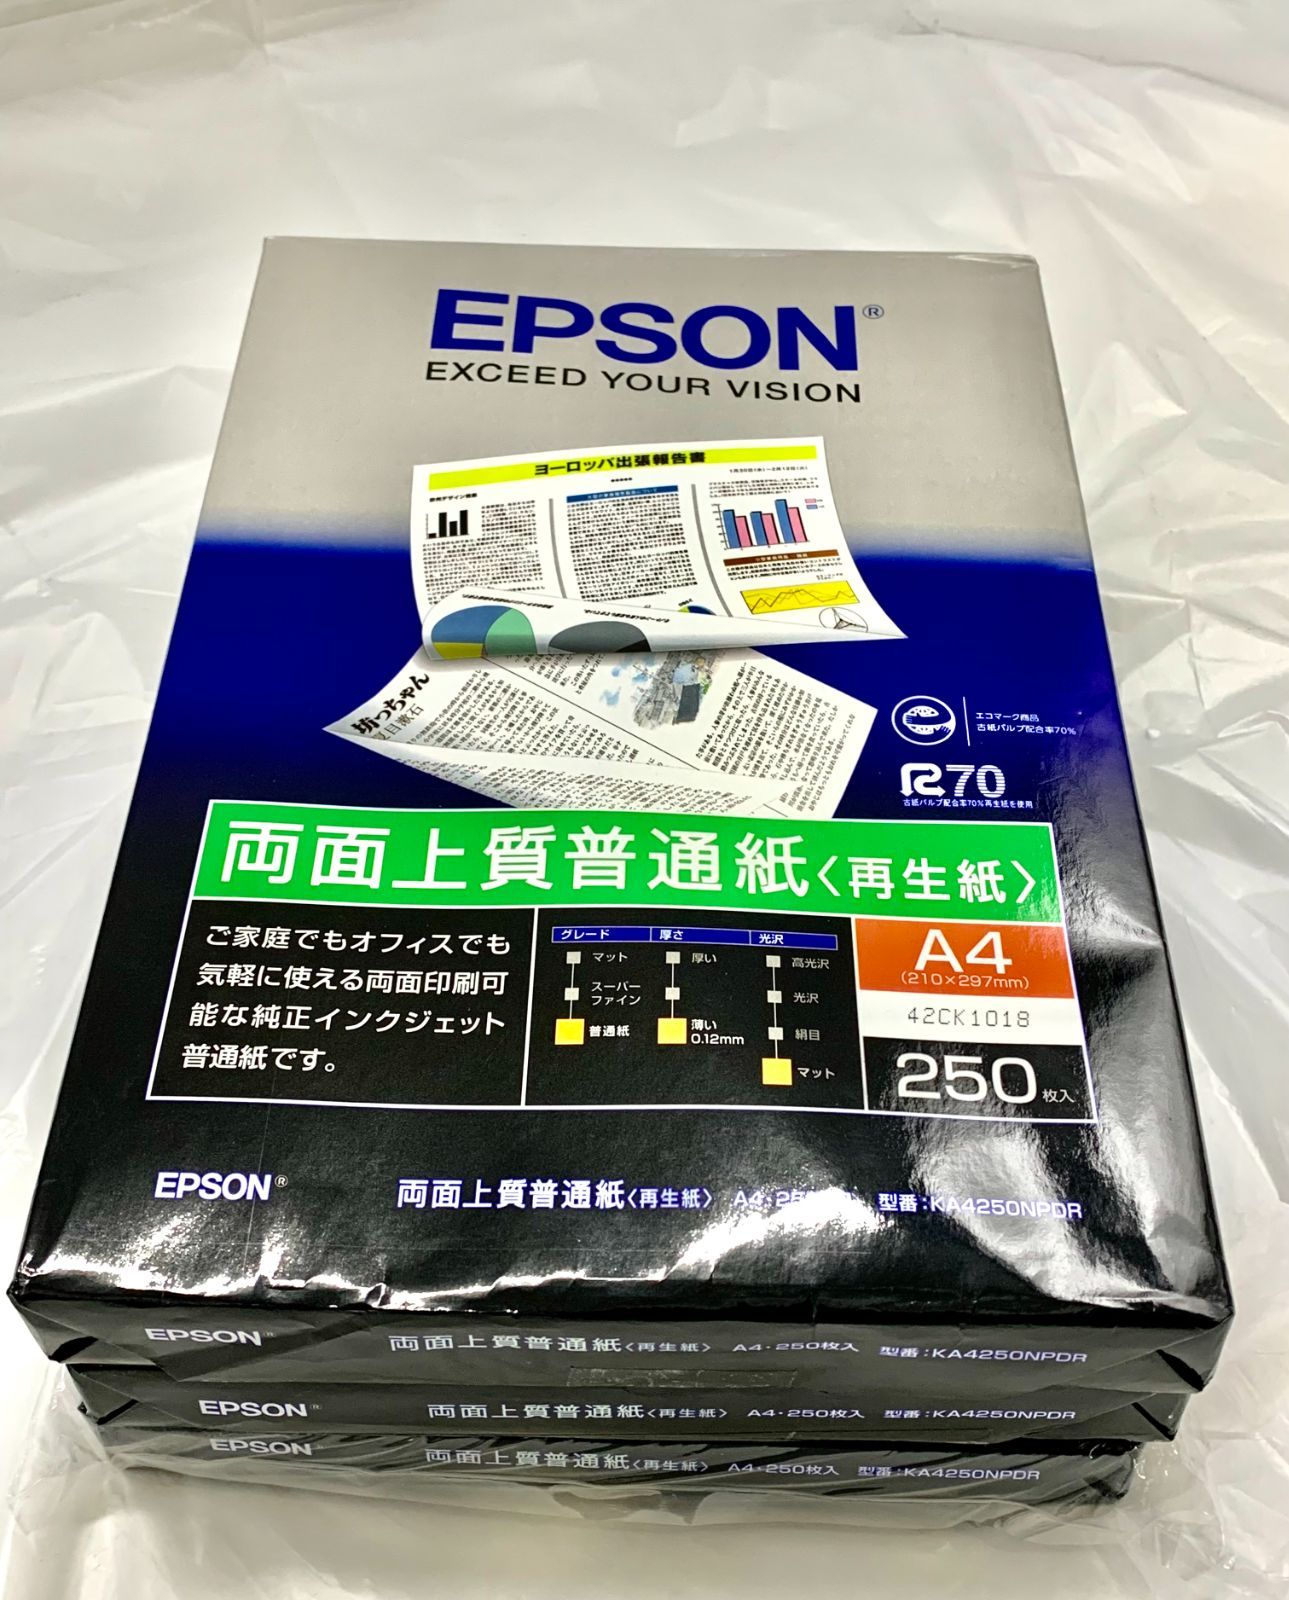 EPSON KA4250NPD - OA機器